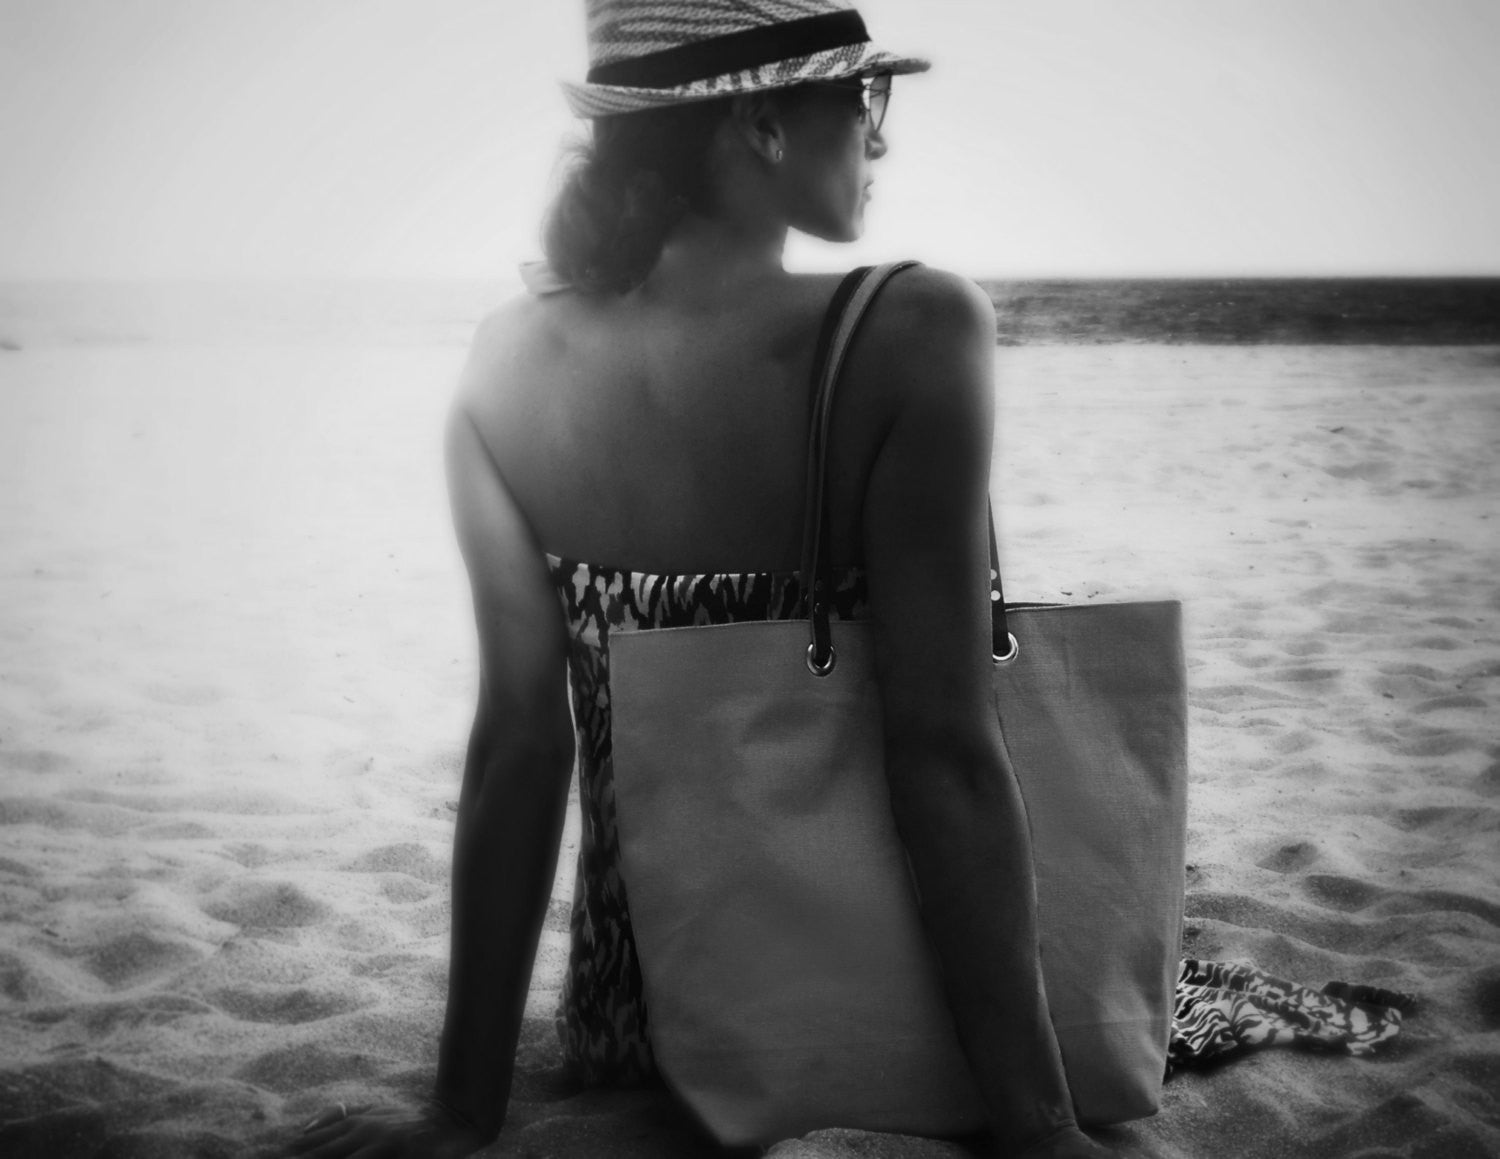 beach bags